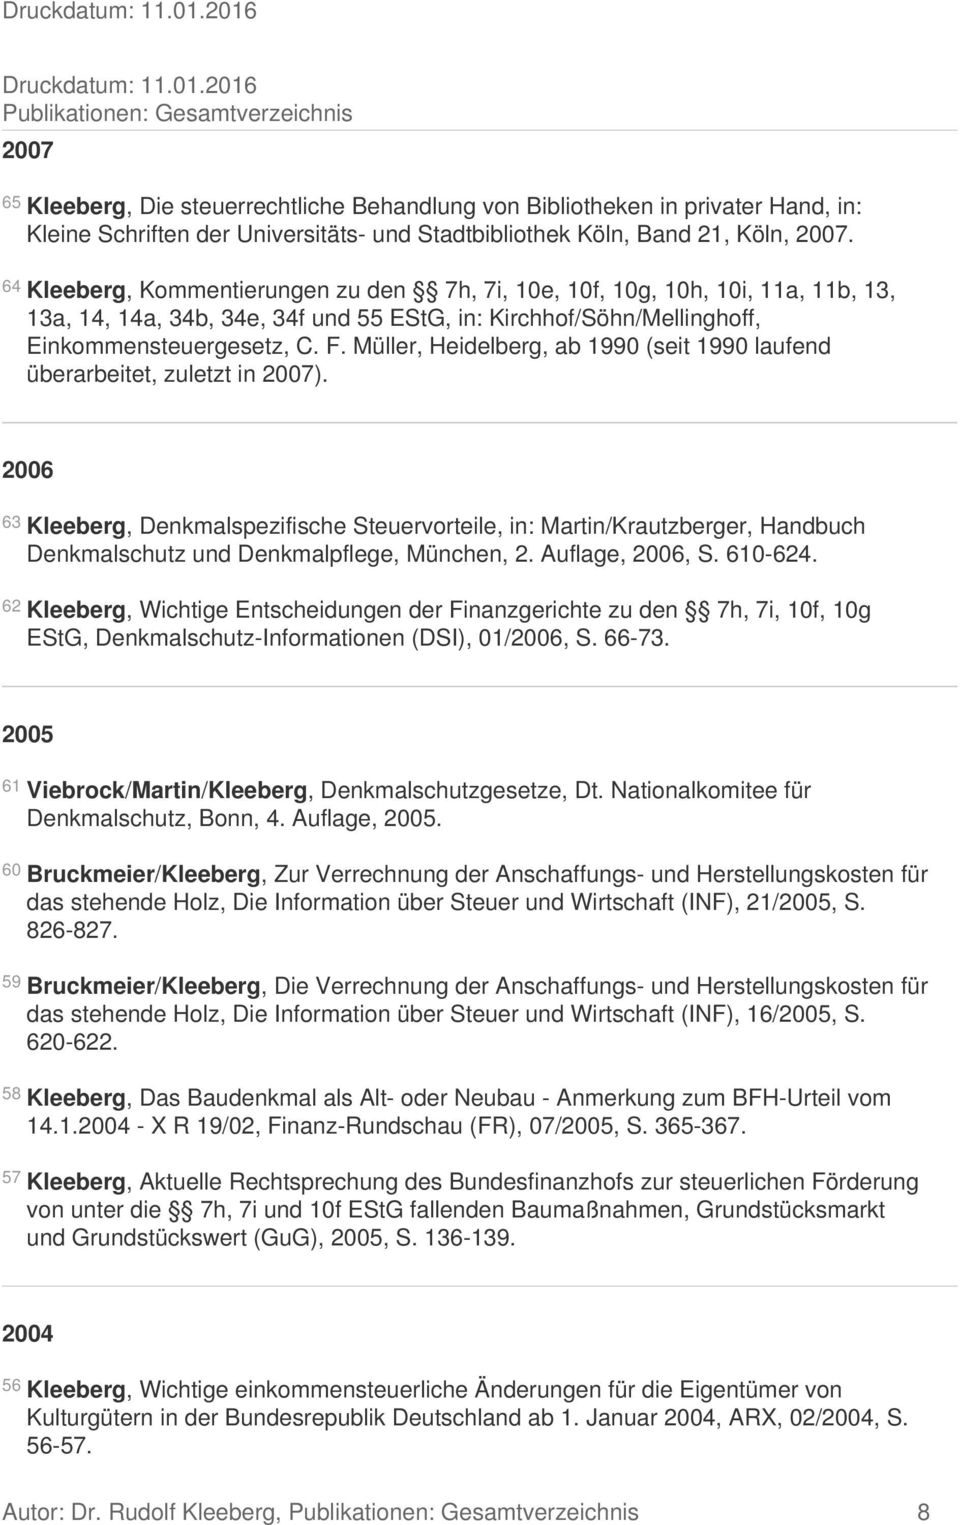 Köln, 2007. 64 Kleeberg, Kommentierungen zu den 7h, 7i, 10e, 10f, 10g, 10h, 10i, 11a, 11b, 13, 13a, 14, 14a, 34b, 34e, 34f und 55 EStG, in: Kirchhof/Söhn/Mellinghoff, Einkommensteuergesetz, C. F.